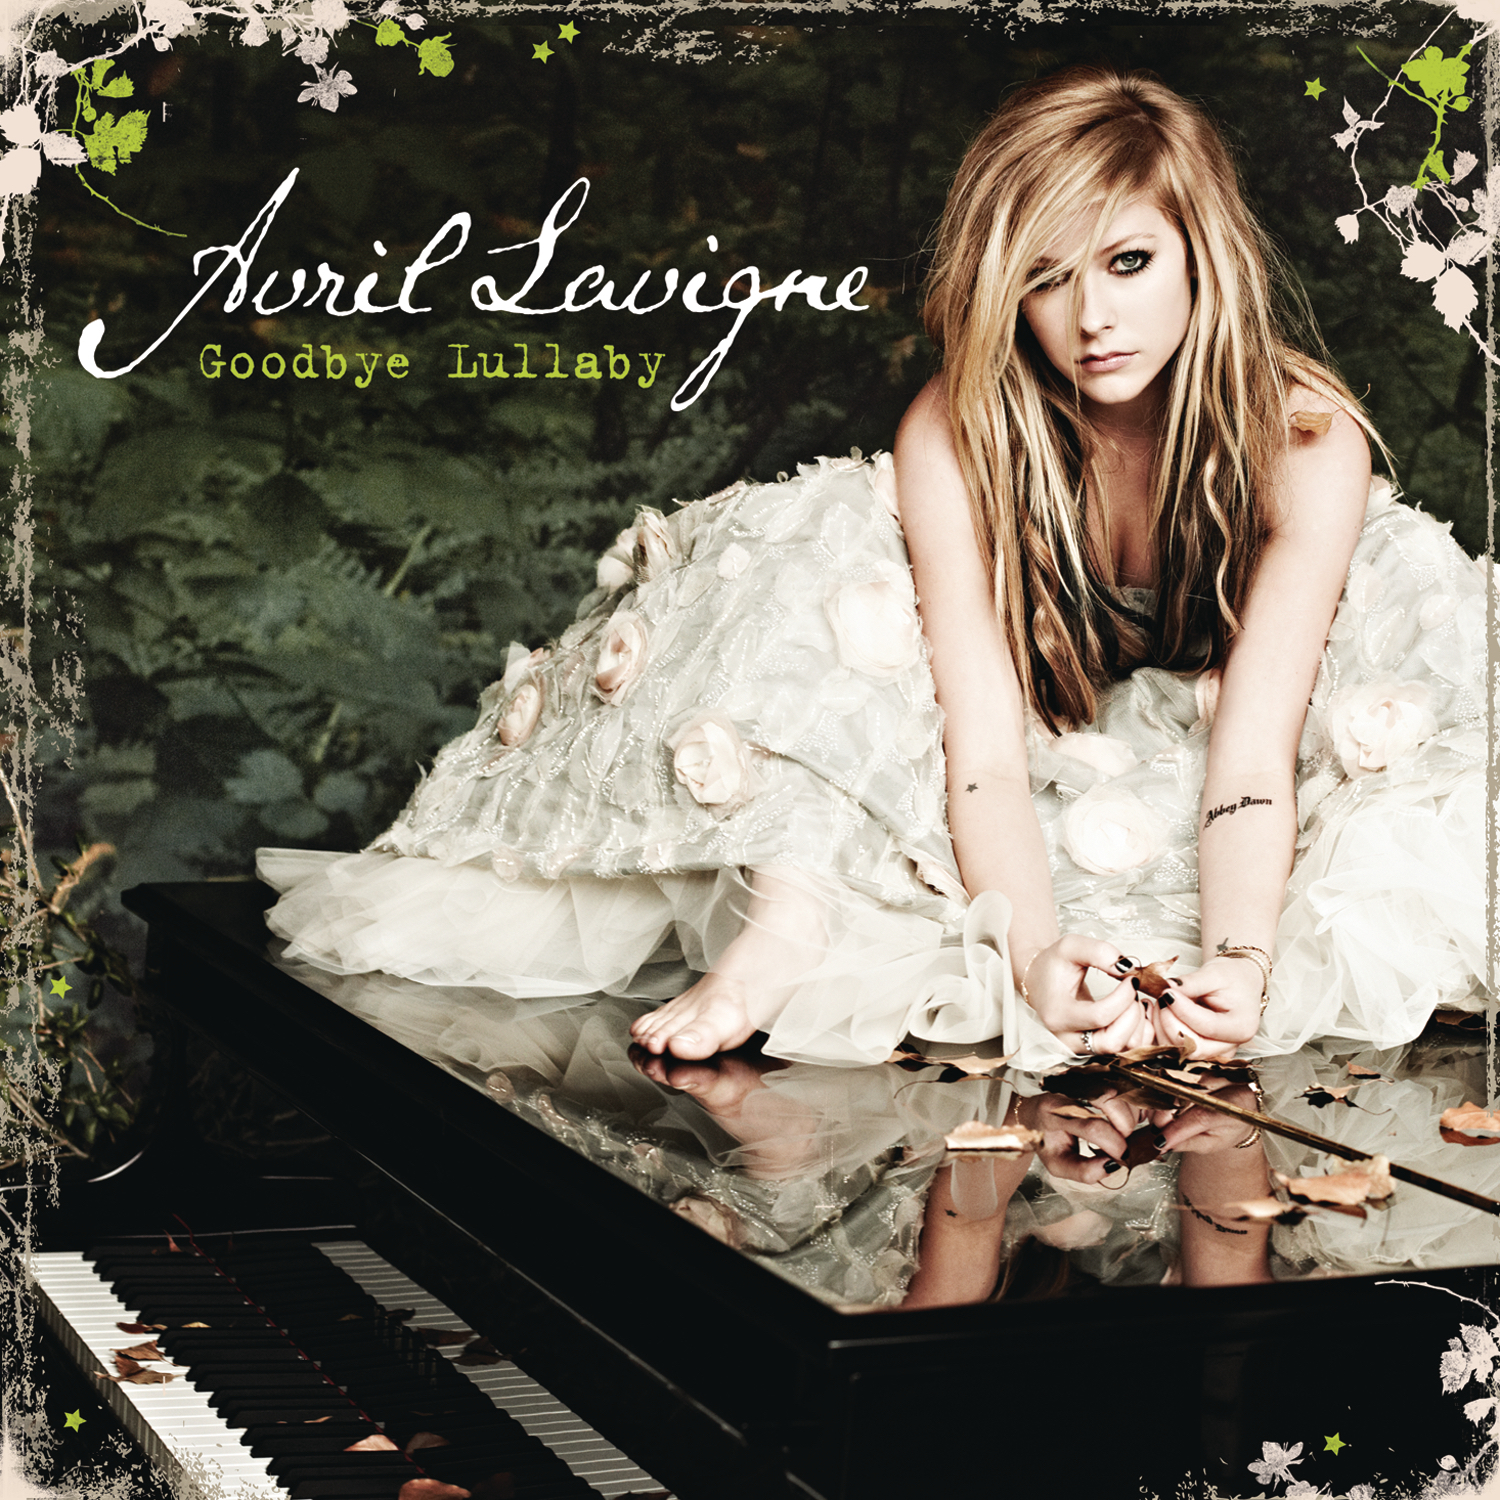 Black Star | Avril Lavigne Wiki | Fandom